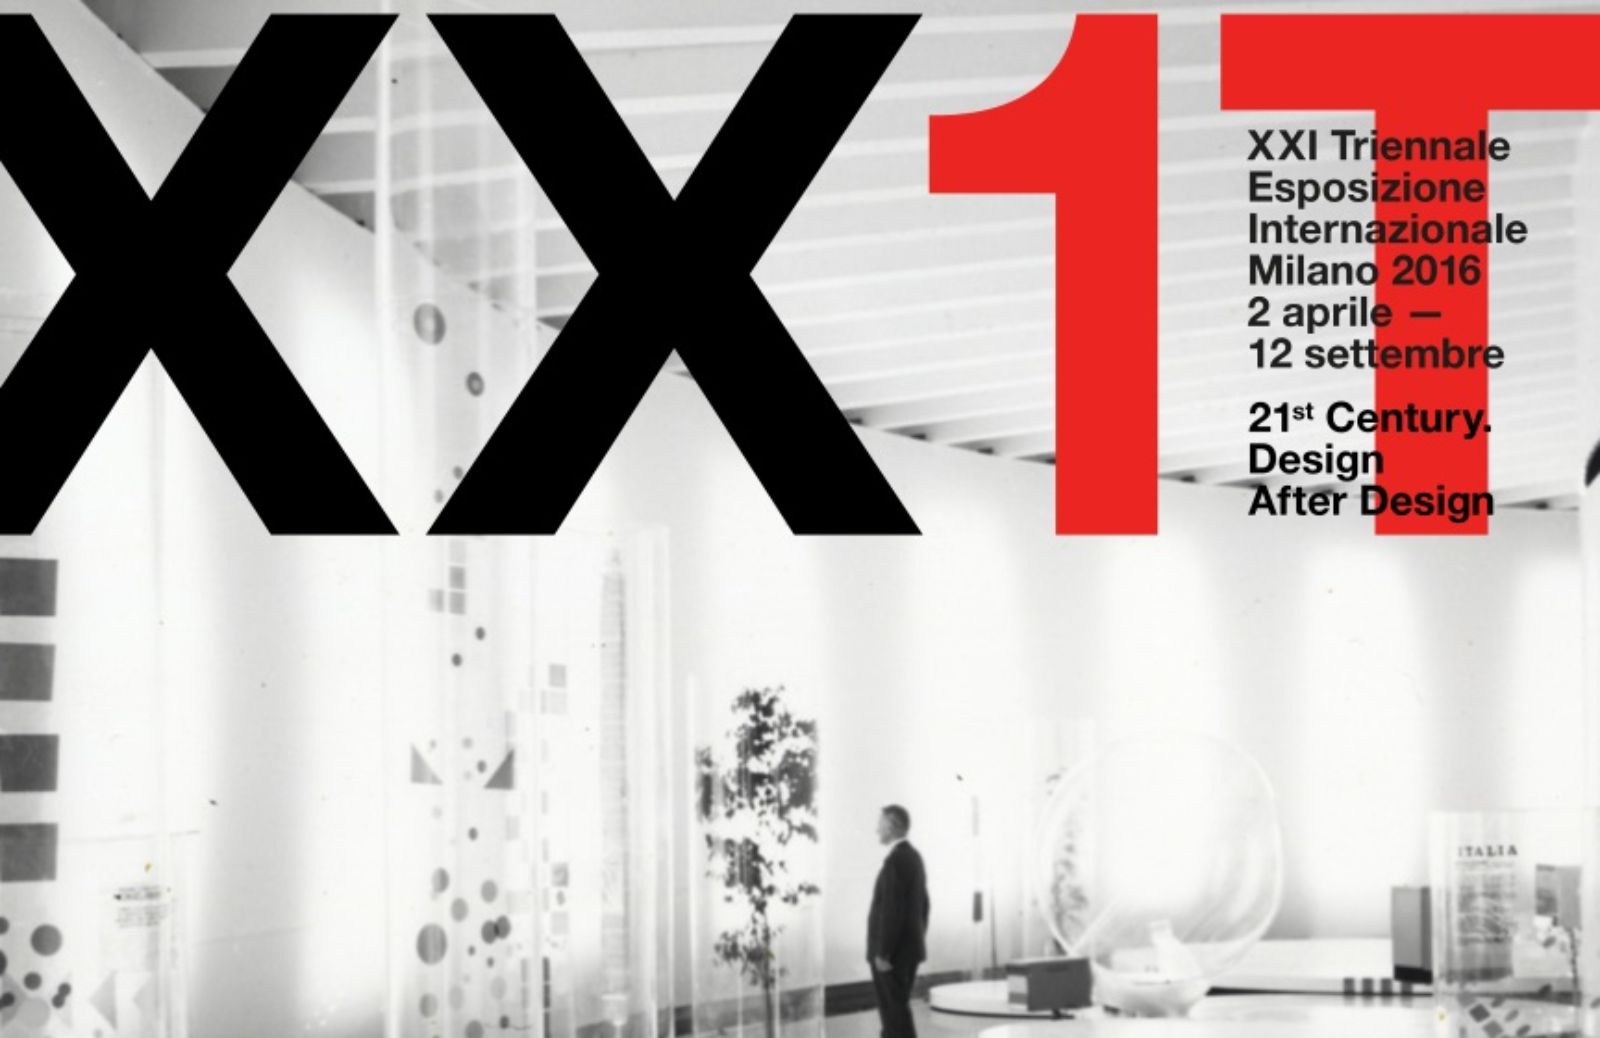 Alla Triennale di Milano la XXI Esposizione Internazionale 